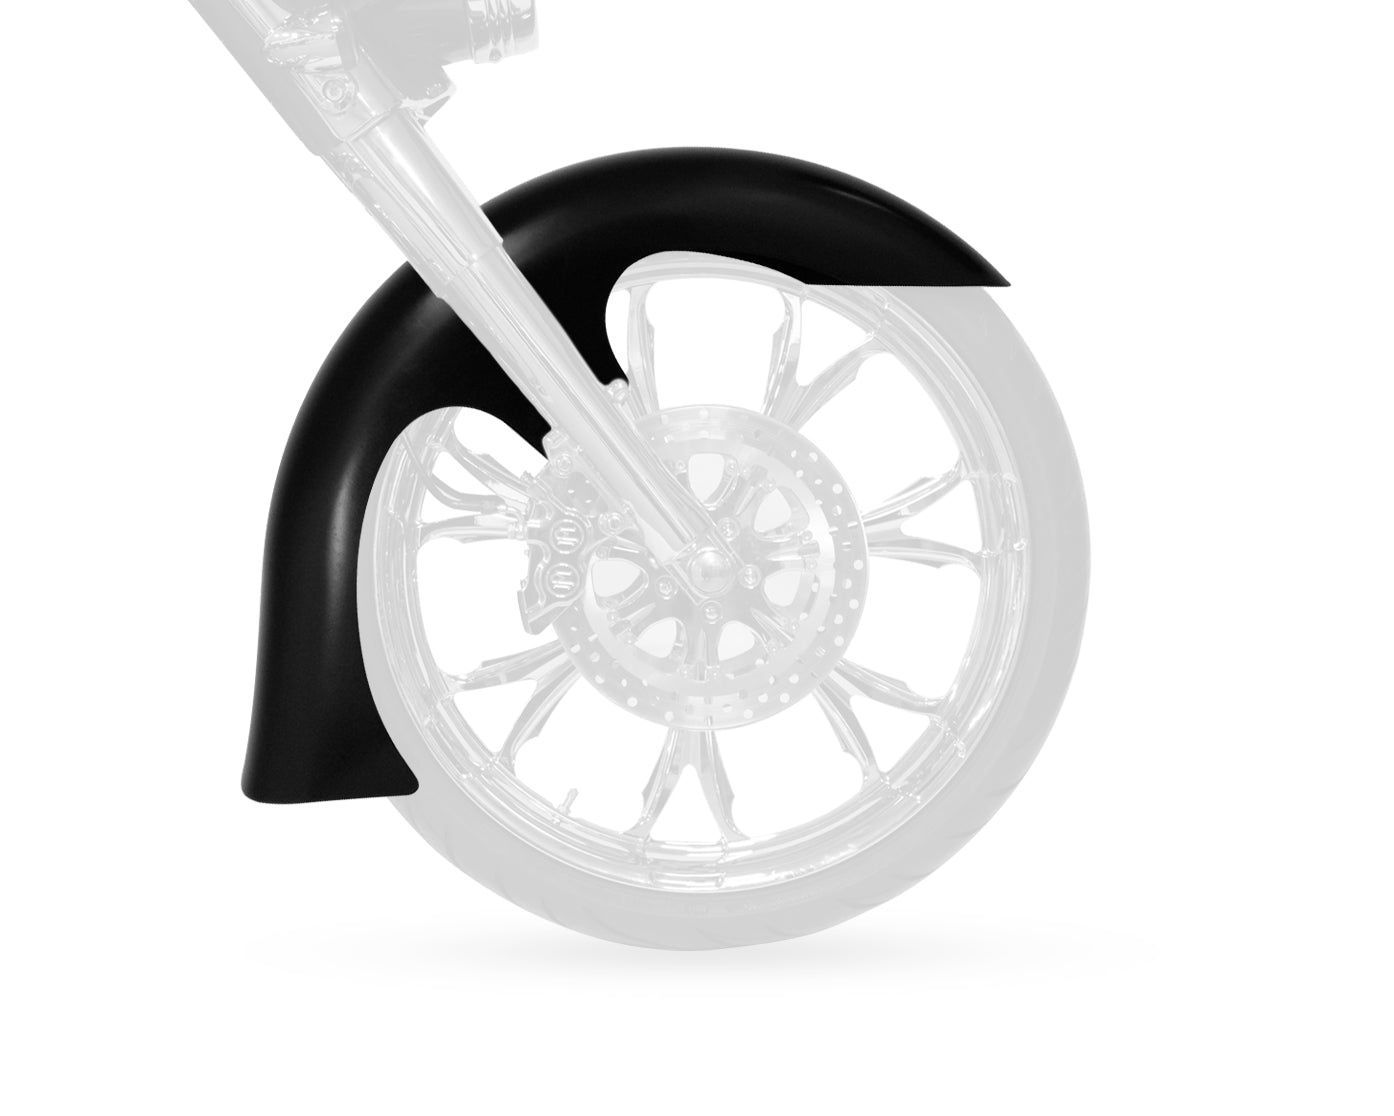 Slicer Stamped Steel Big Wheel Front Fender FIT KIT for Harley-Davidson 2014-2016 Touring Motorcycle Models(Slicer)